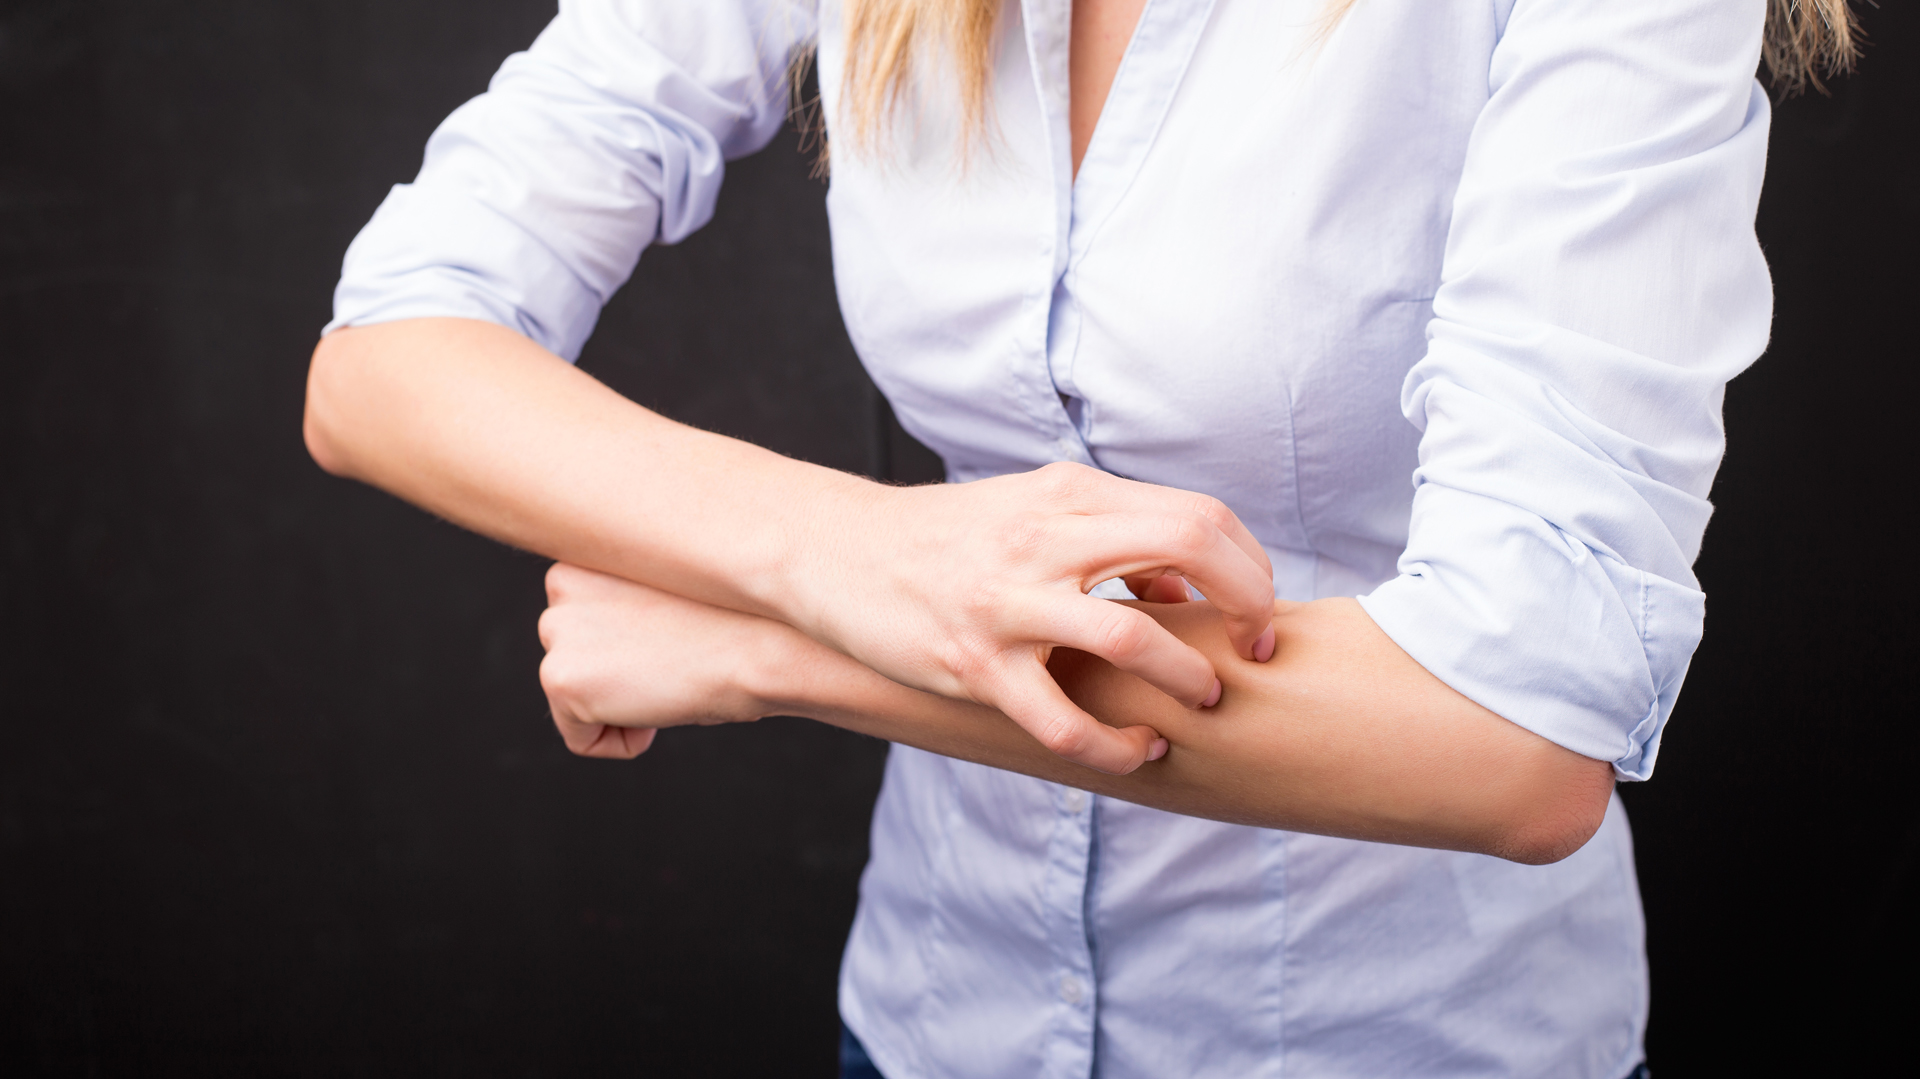 En la psoriasis, el dolor y la picazón que producen las lesiones cutáneas son dos de los principales síntomas